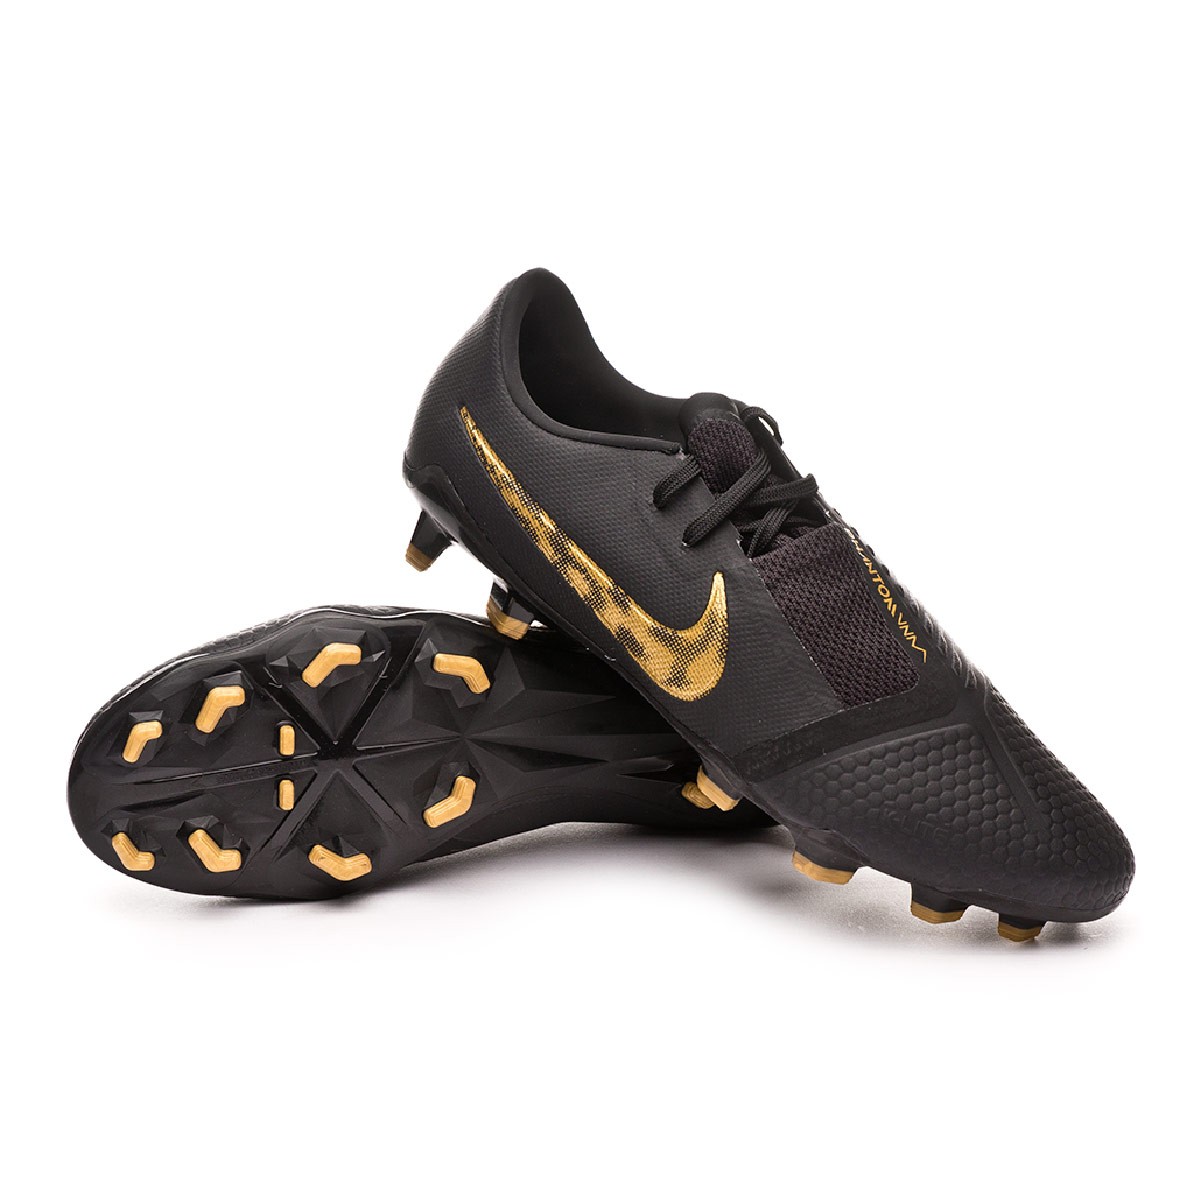 Zapatos de fútbol Nike Phantom Venom Pro FG Black-Metallic vivid gold -  Tienda de fútbol Fútbol Emotion